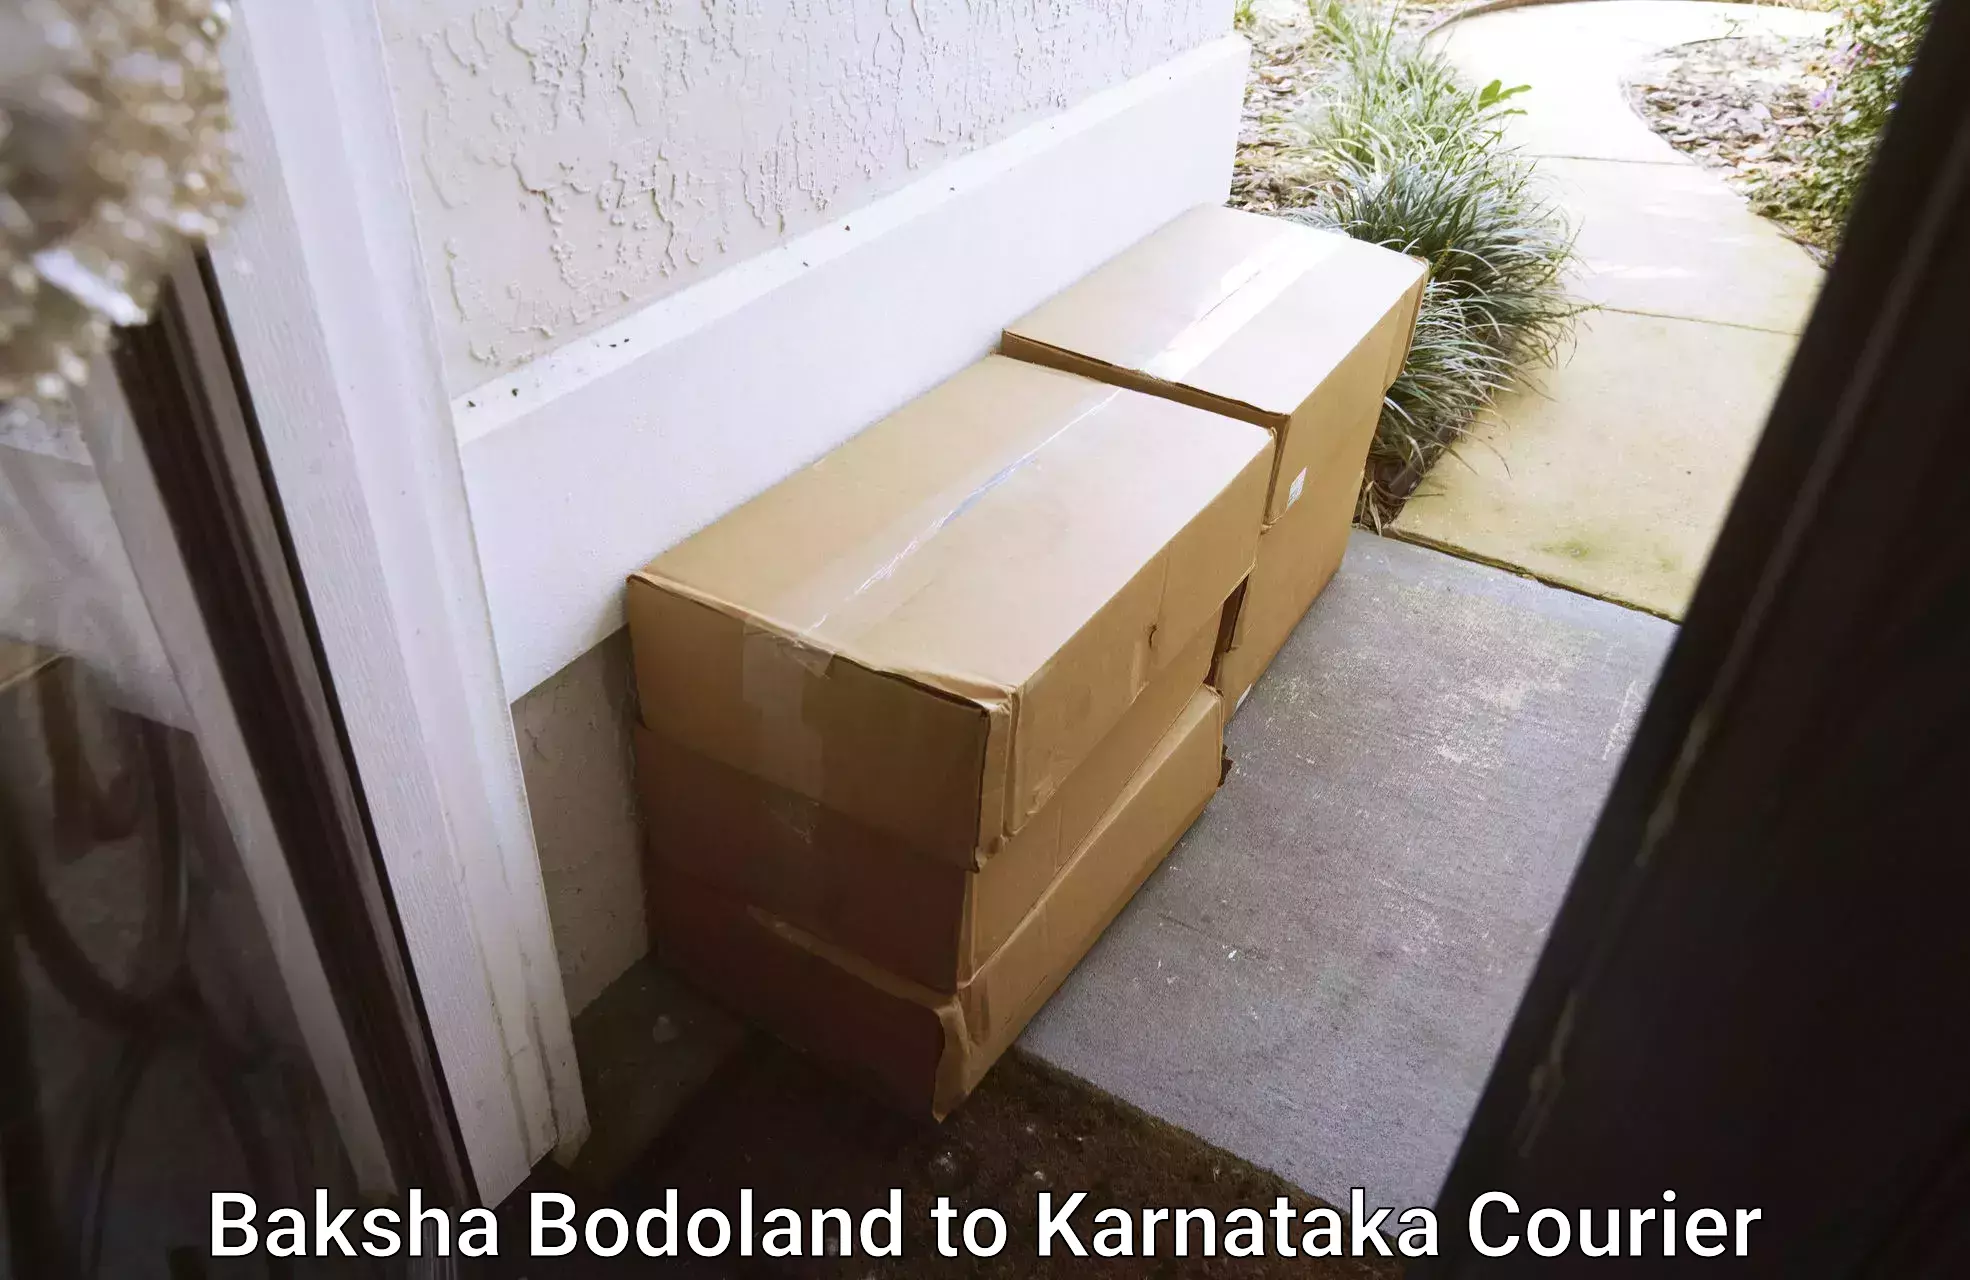 Quick courier services Baksha Bodoland to Sandur